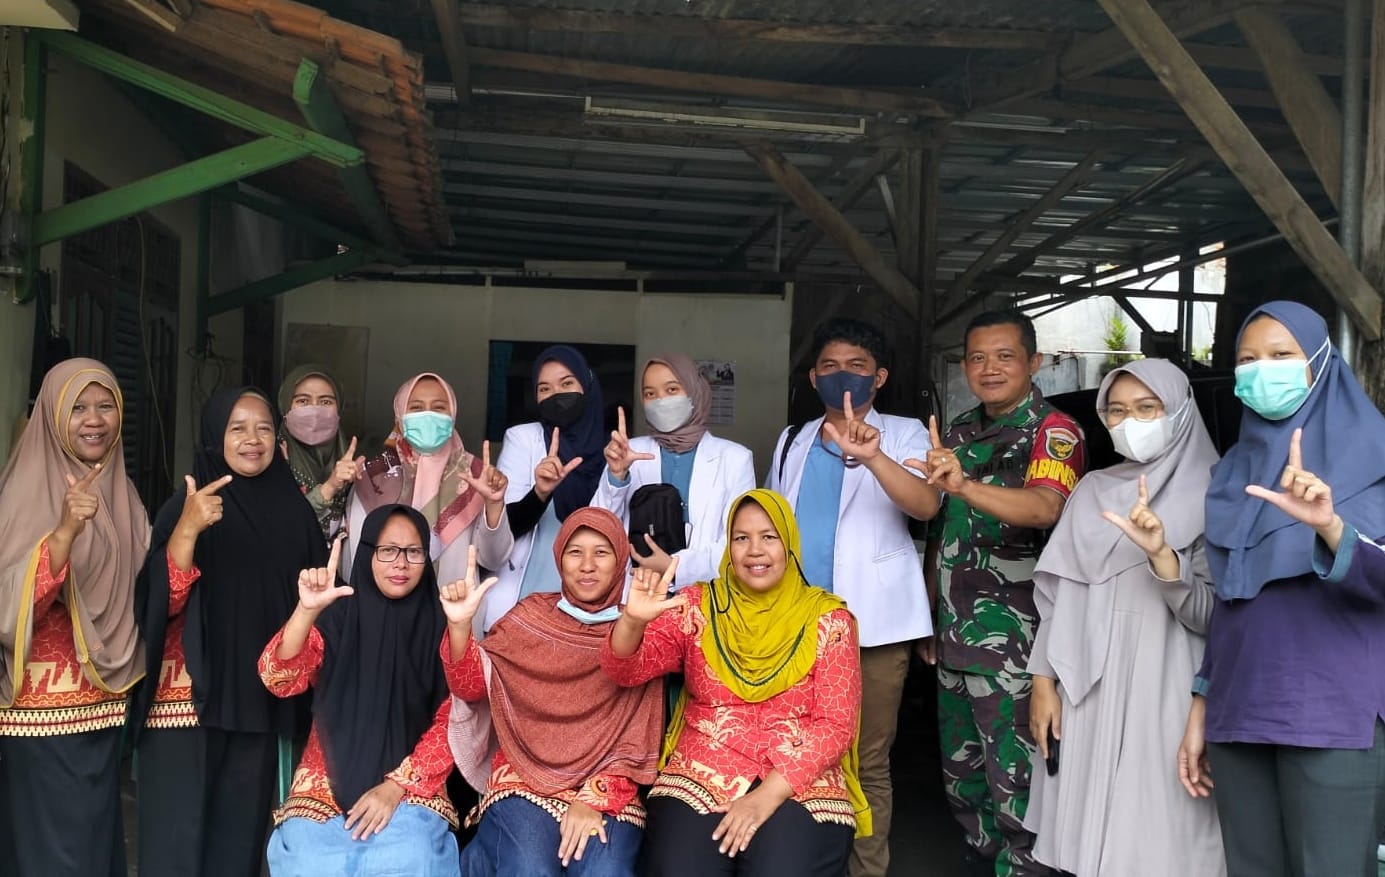 Cegah Stunting Dan Peduli Kesehatan Balita, Babinsa Koramil 410-02 TBS Monitoring Kegiatan Posyandu